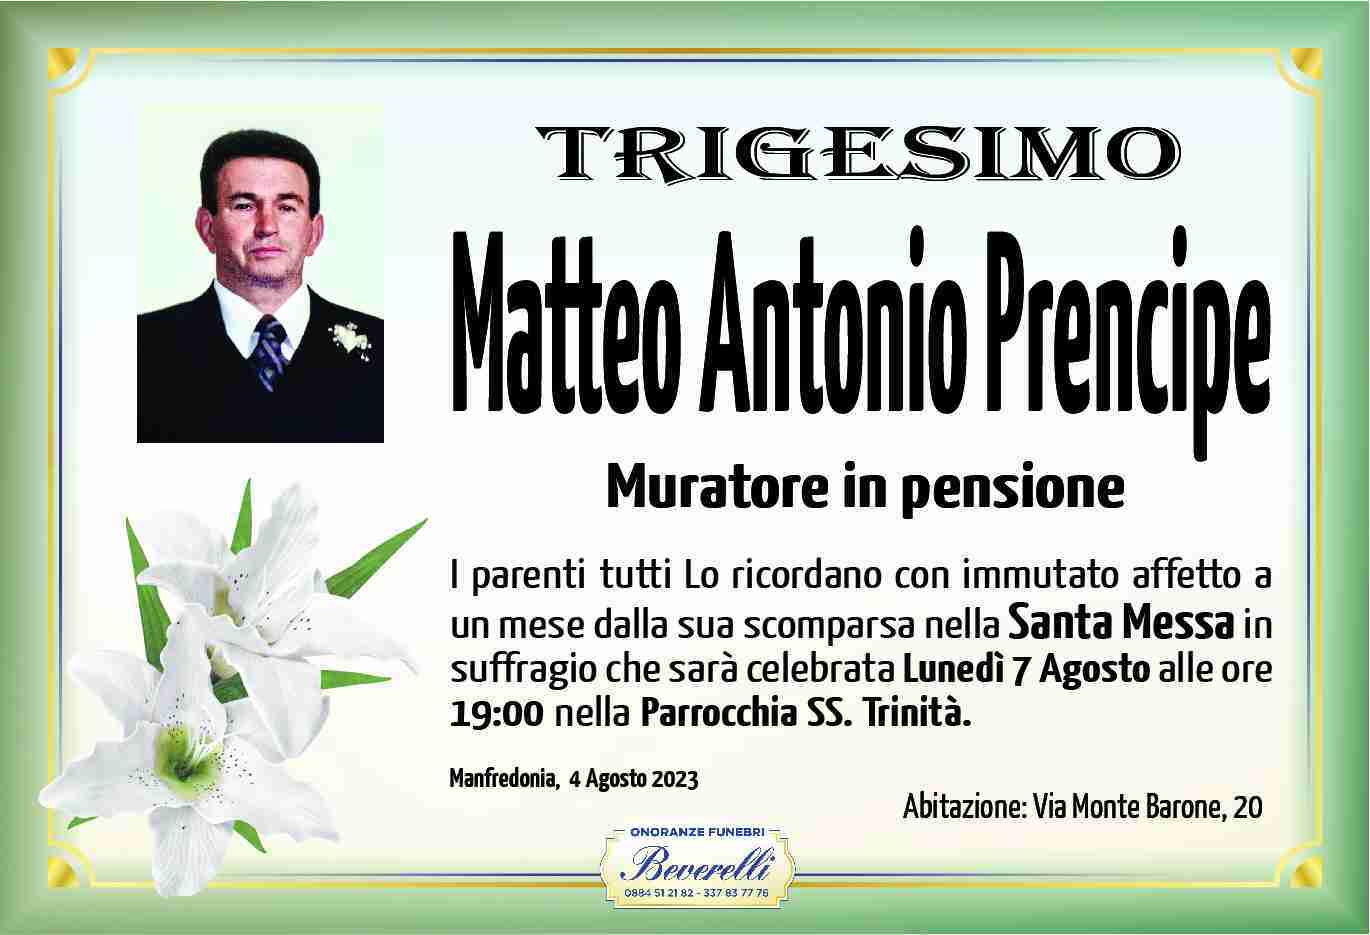 Matteo Antonio Prencipe